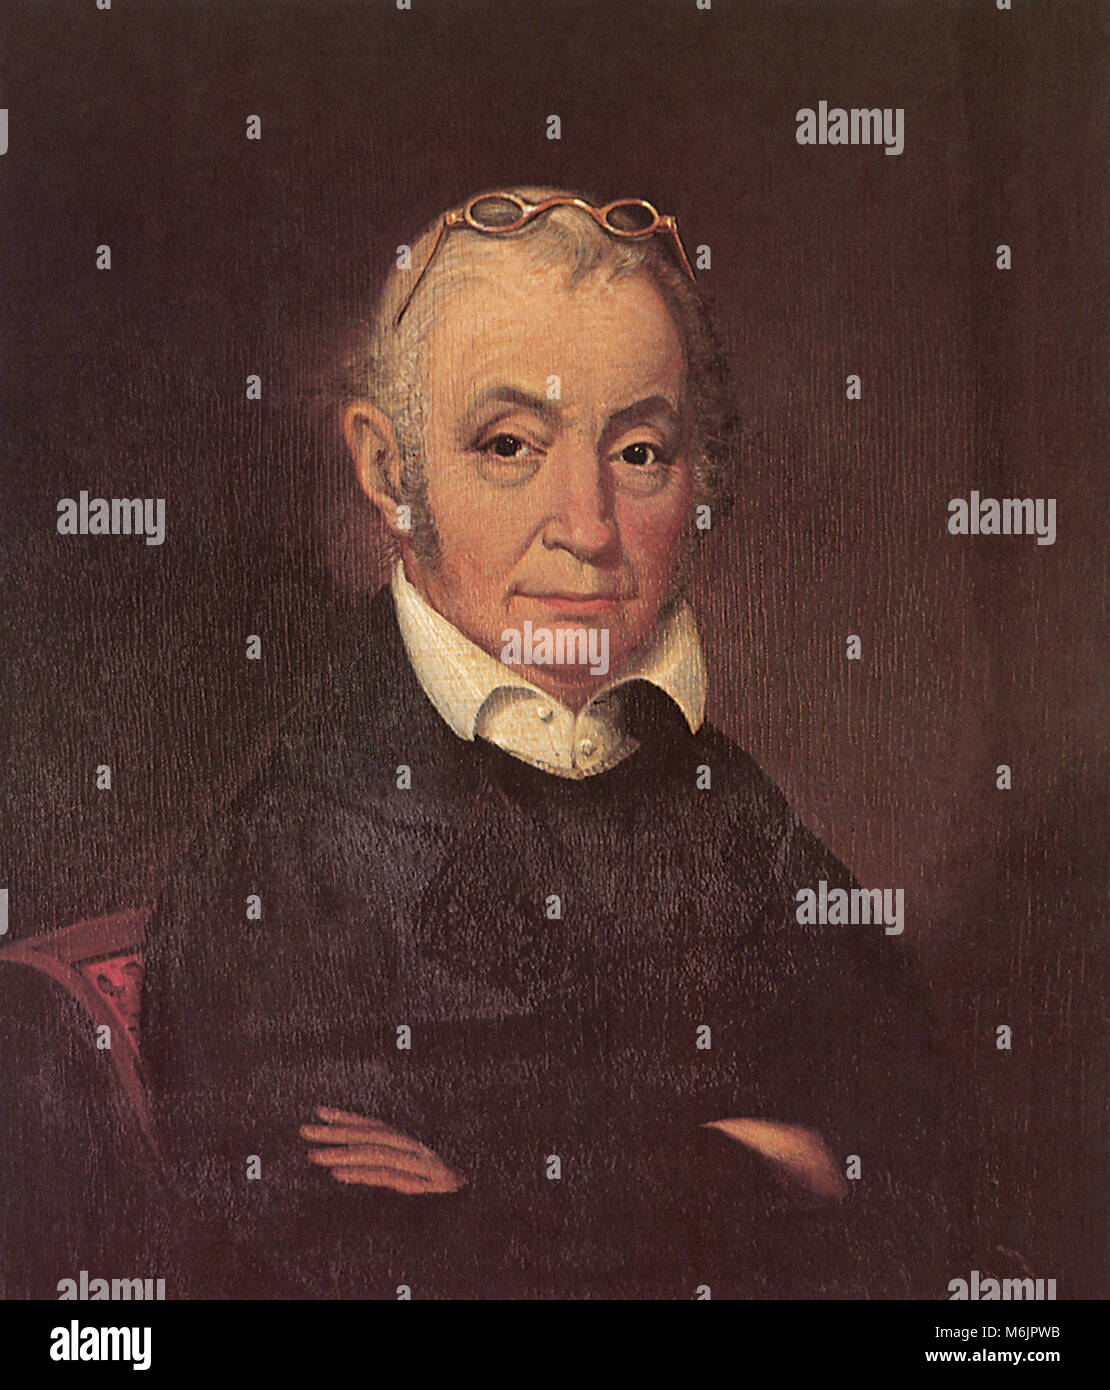 Aaron Burr 1834, Deich, James Van, 1834. Stockfoto